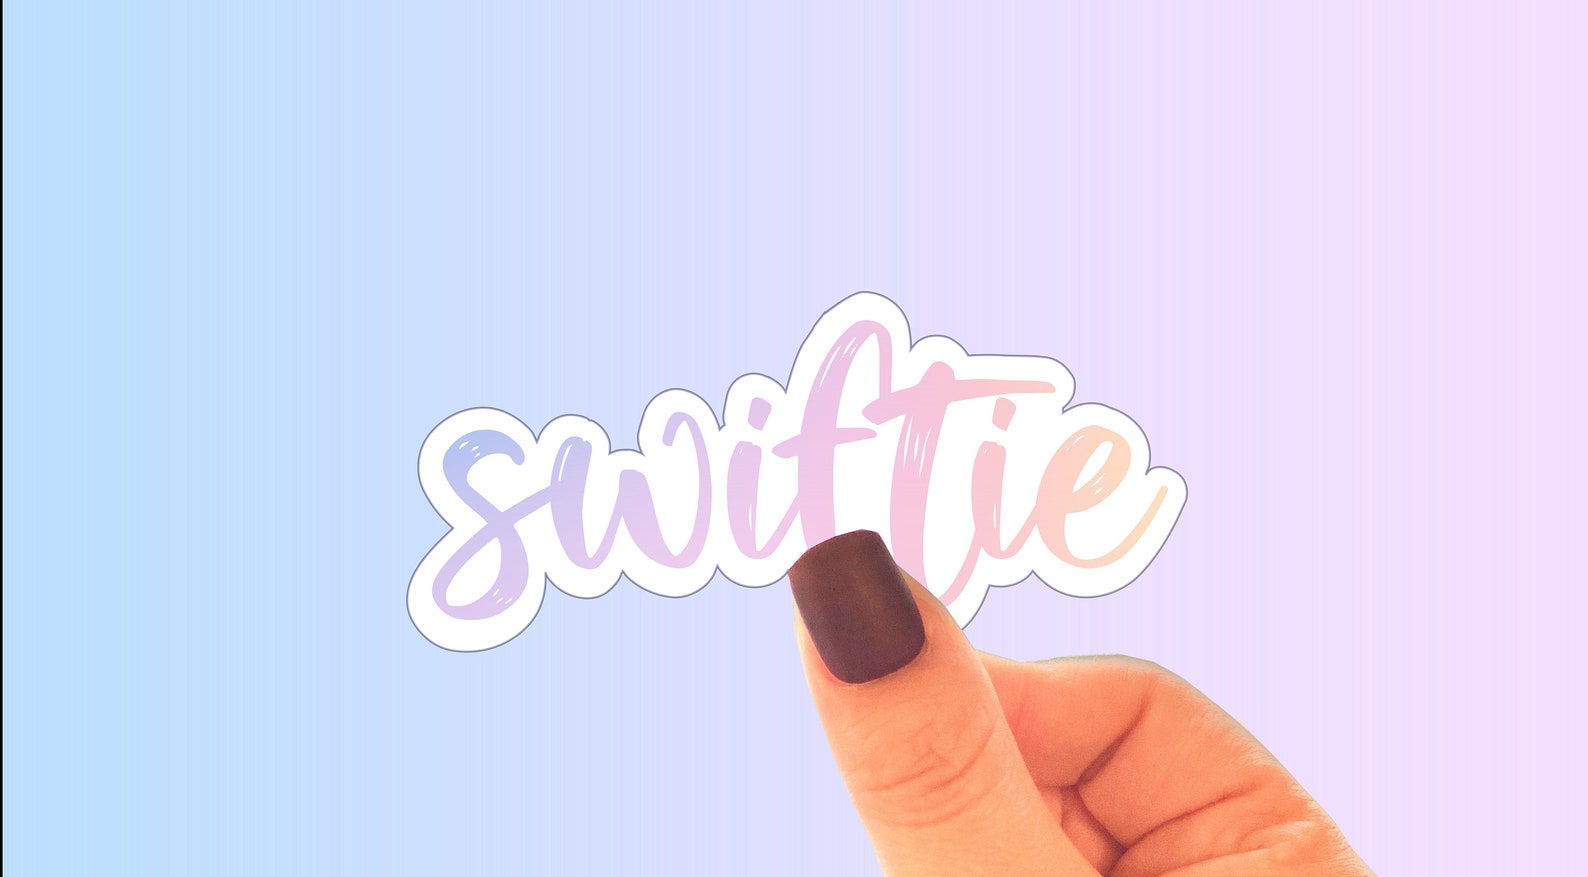 Swiftie in Lover Color Taylor Swift Fan Sticker for Laptop | Etsy